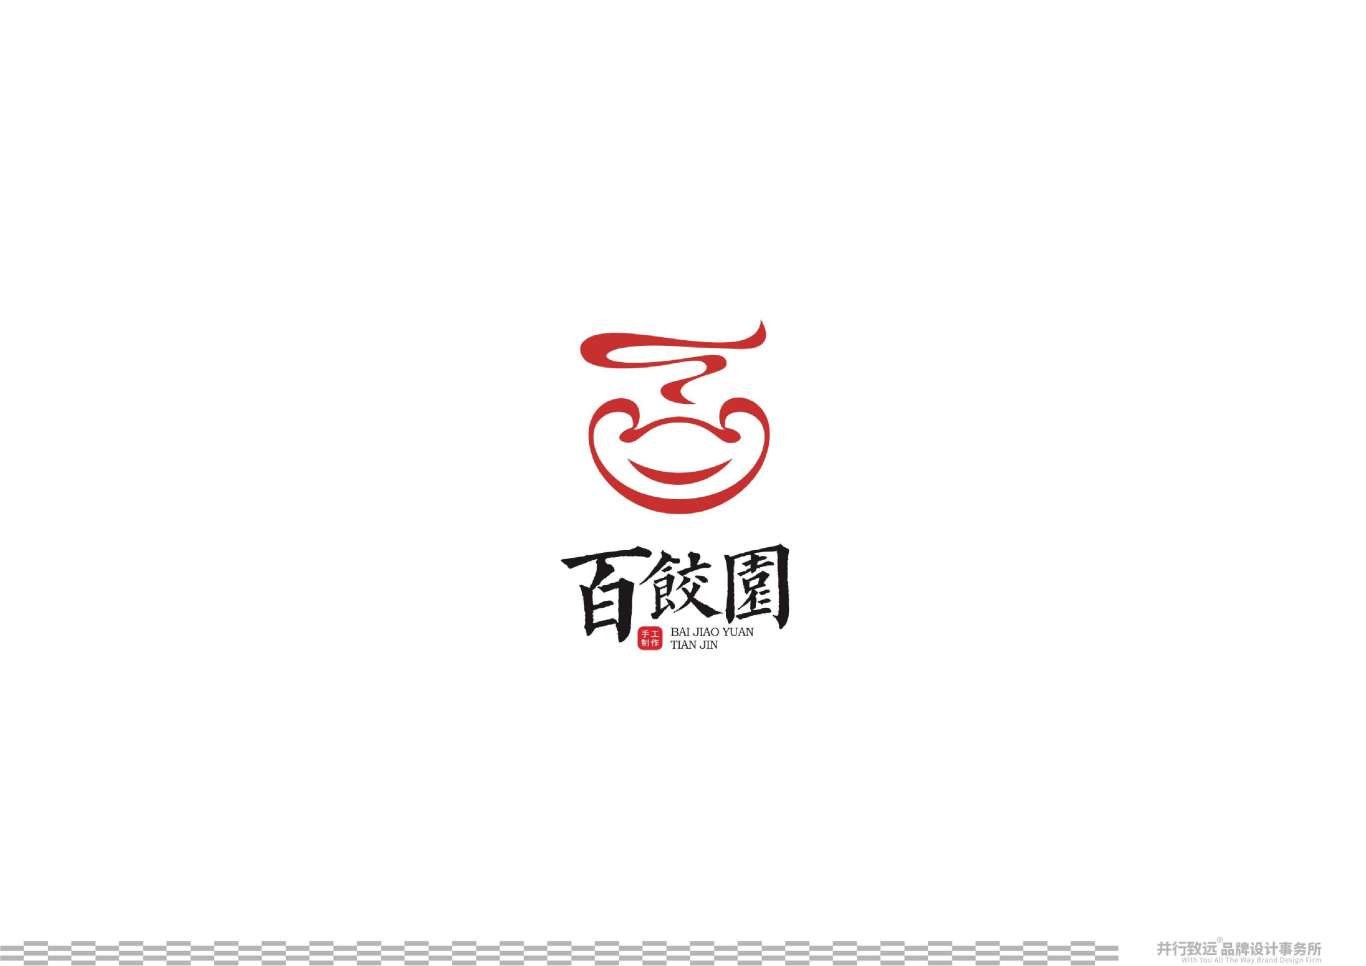 天津百饺园logo升级设计图25